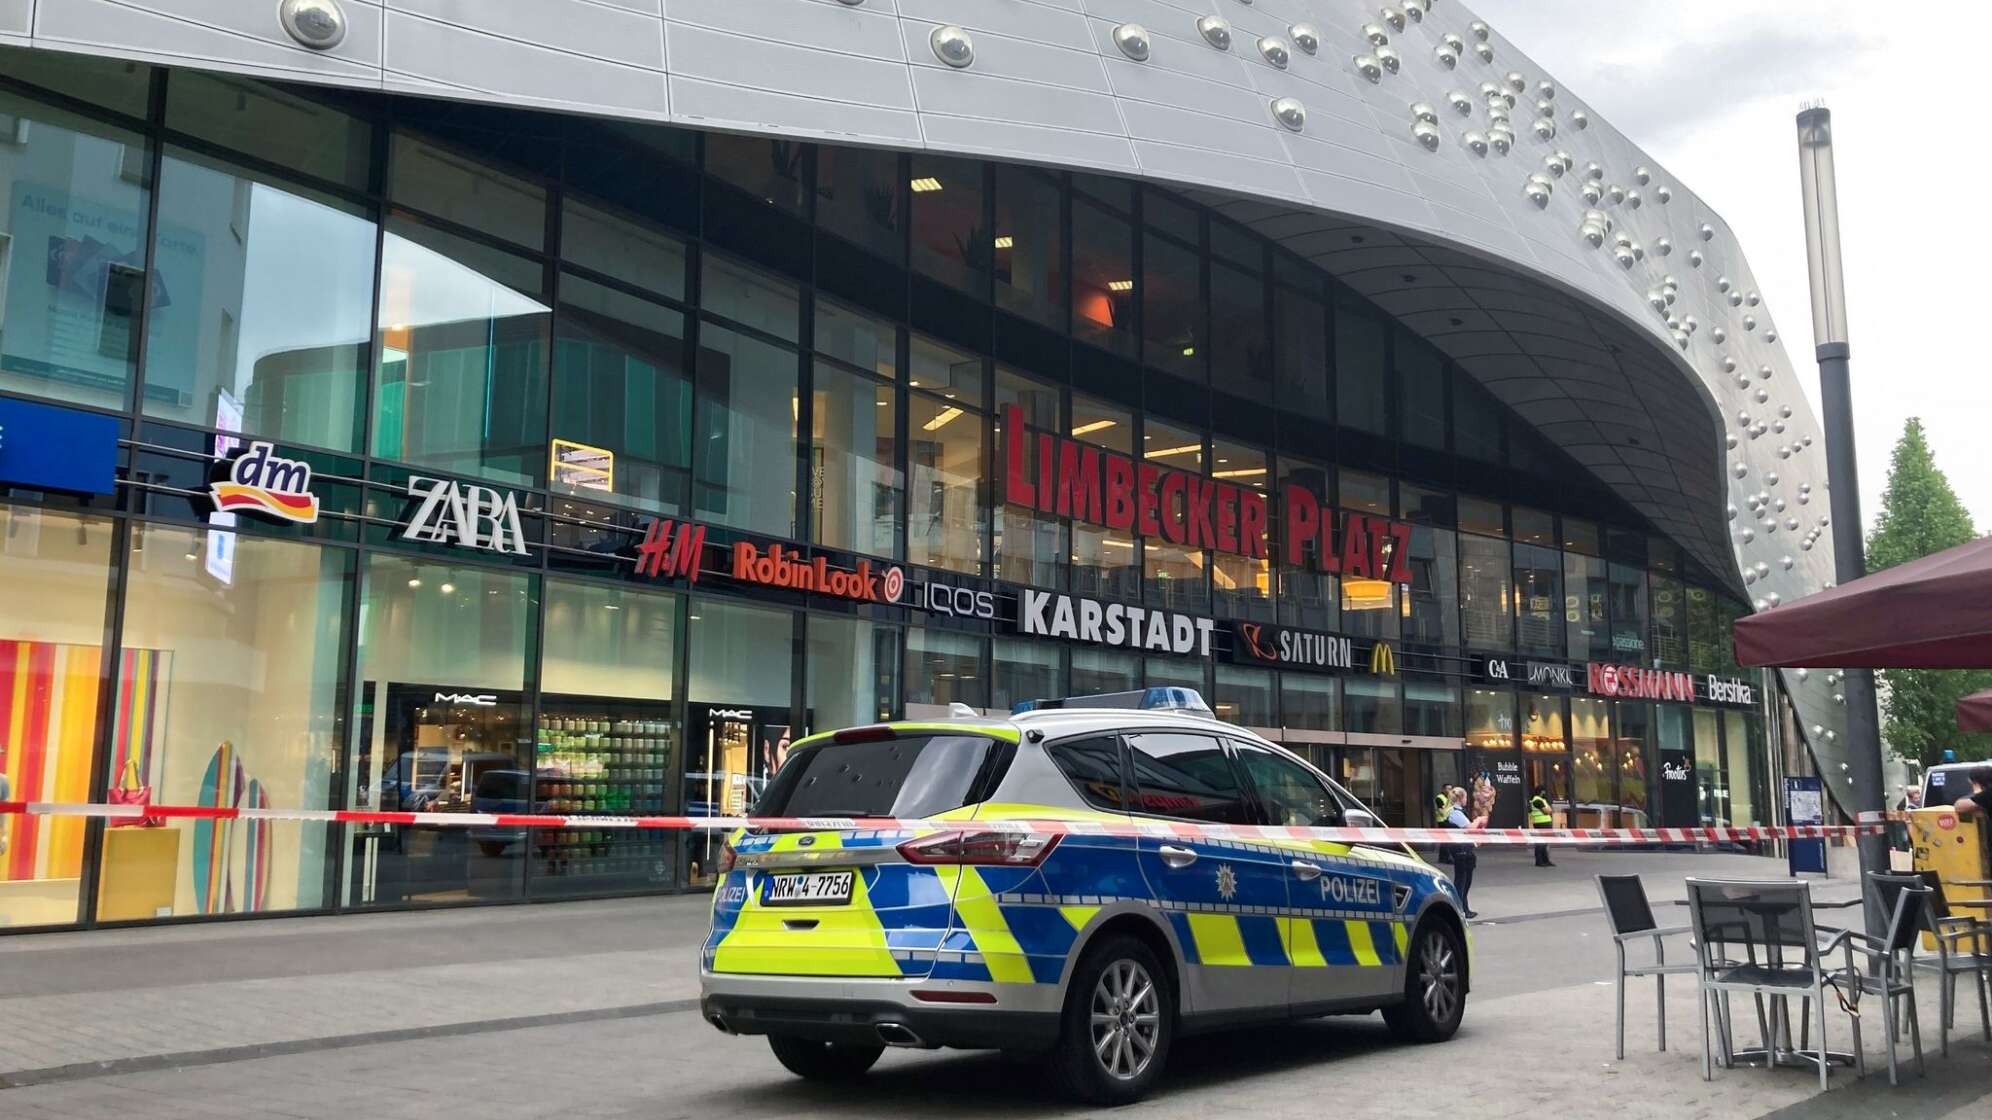 Polizei räumt Einkaufszentrum nach Drohung